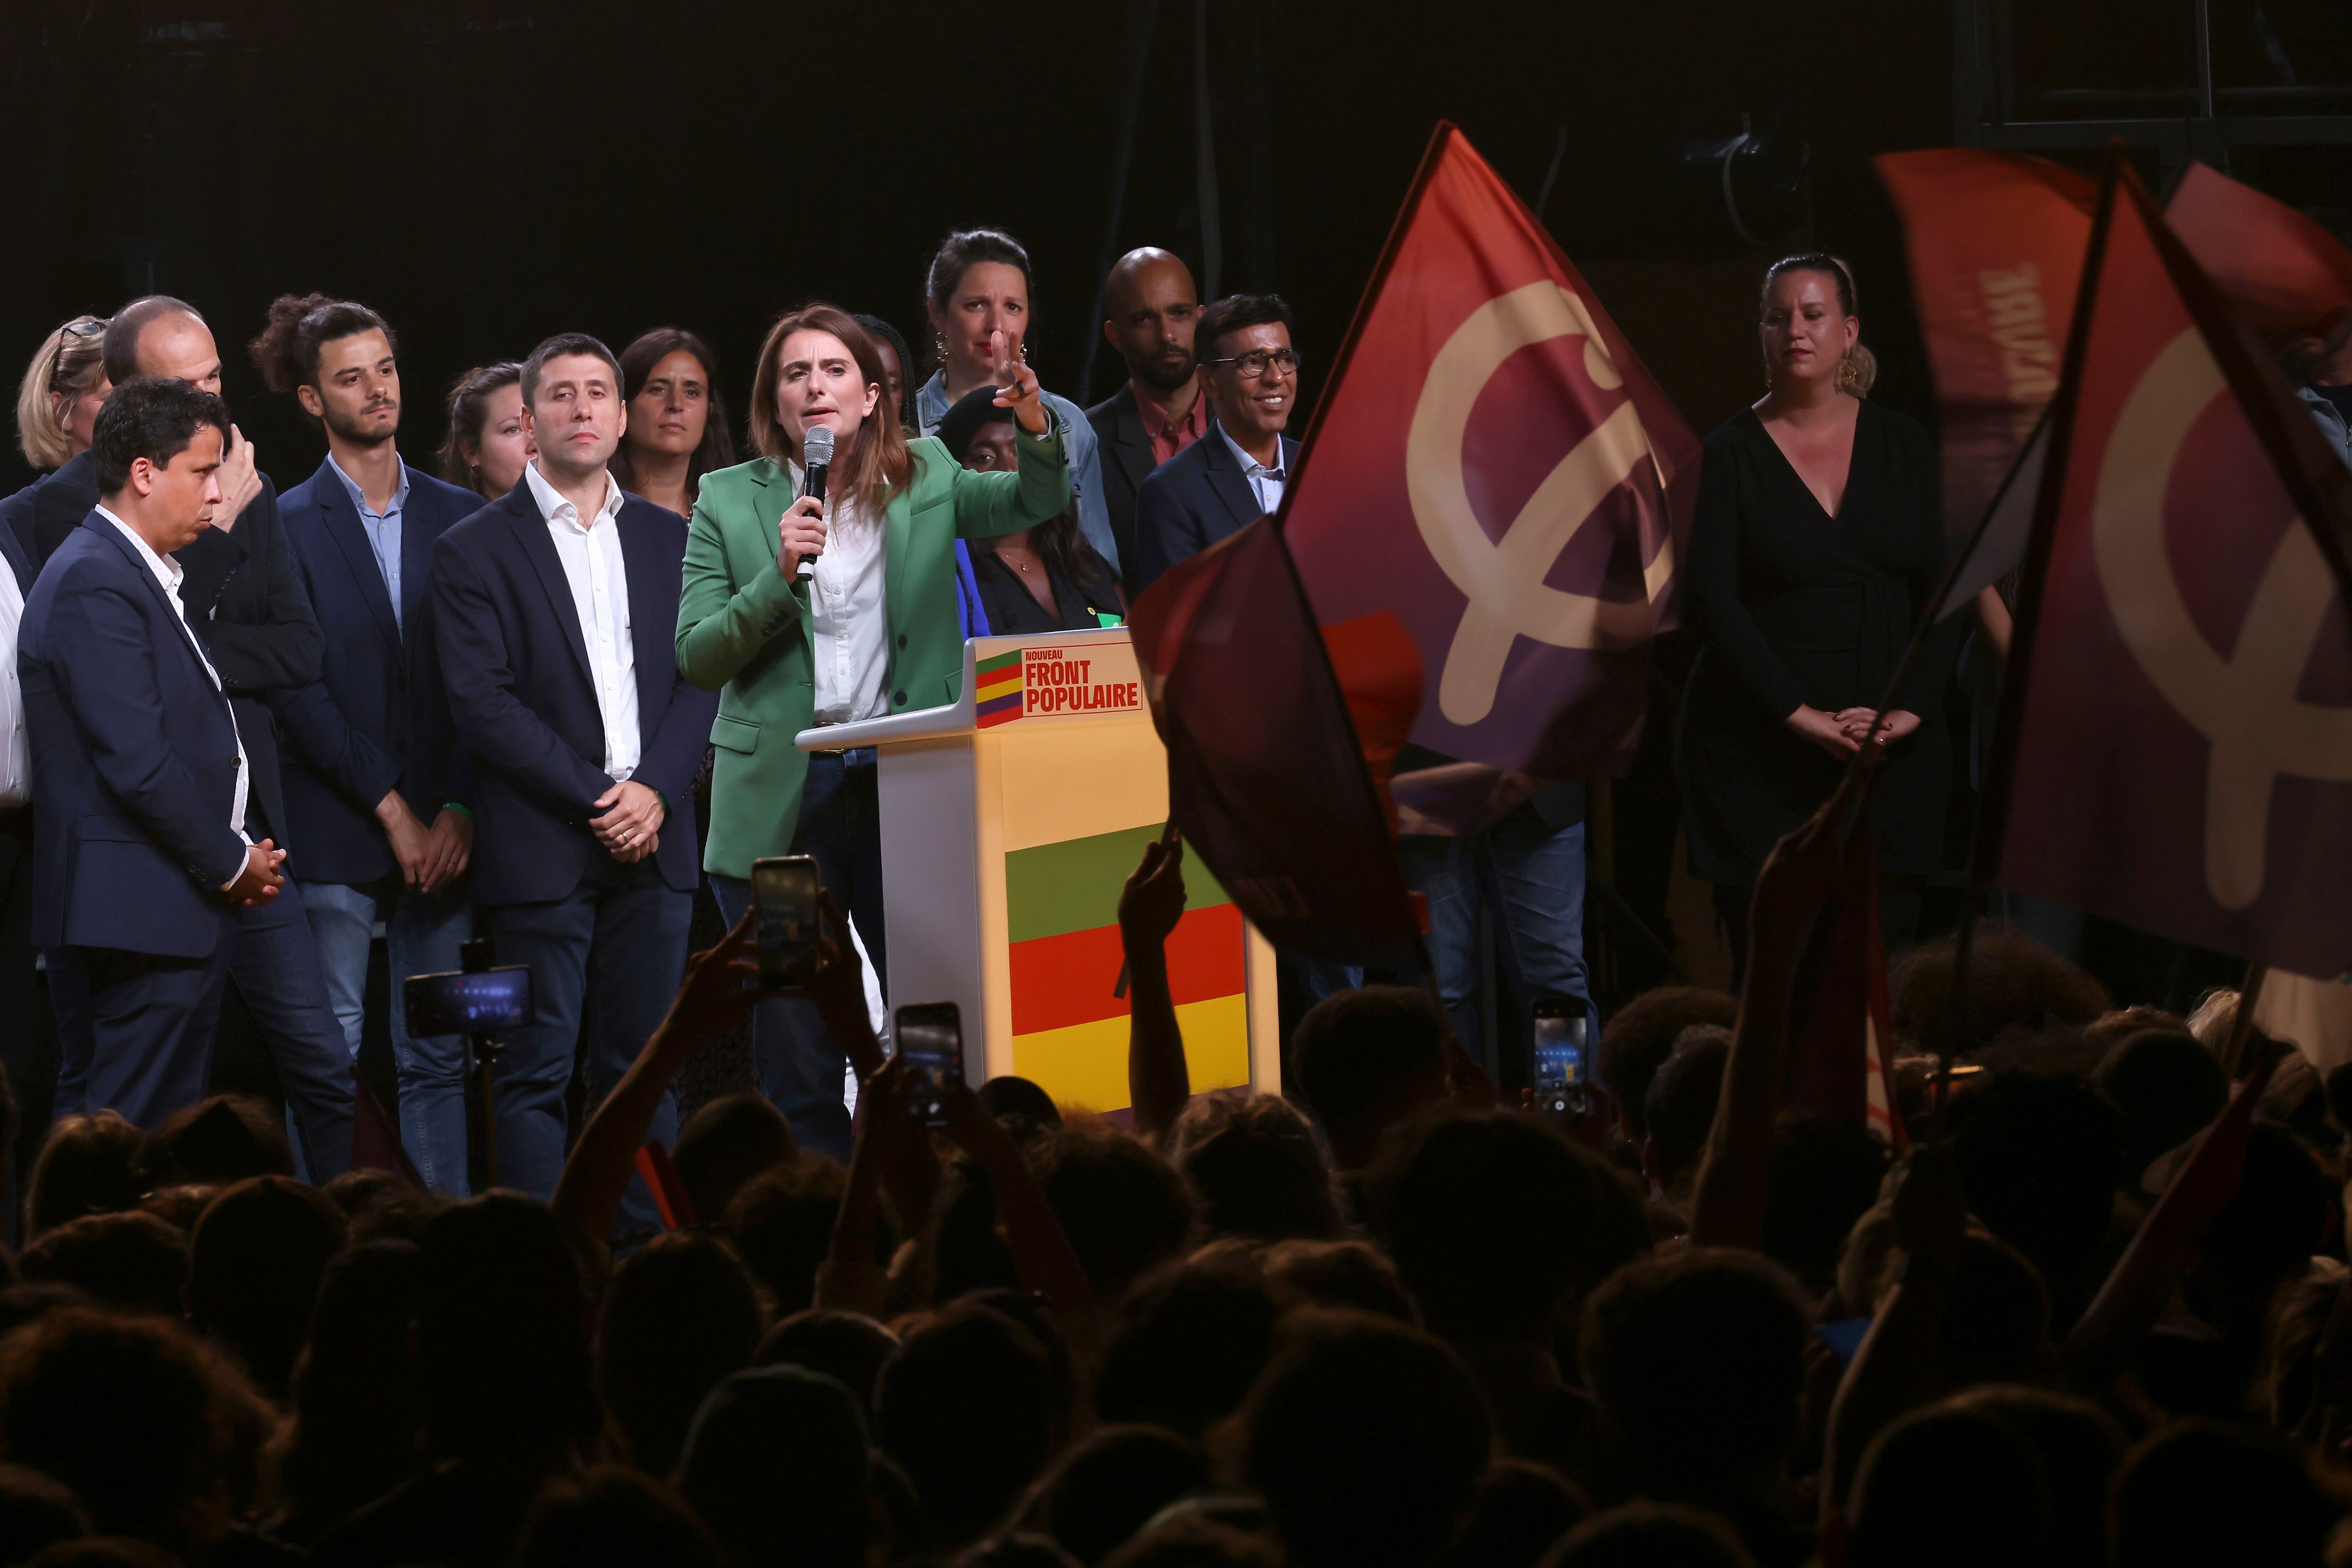 Jordan Bardella acelera el camino al poder de la extrema derecha en Francia